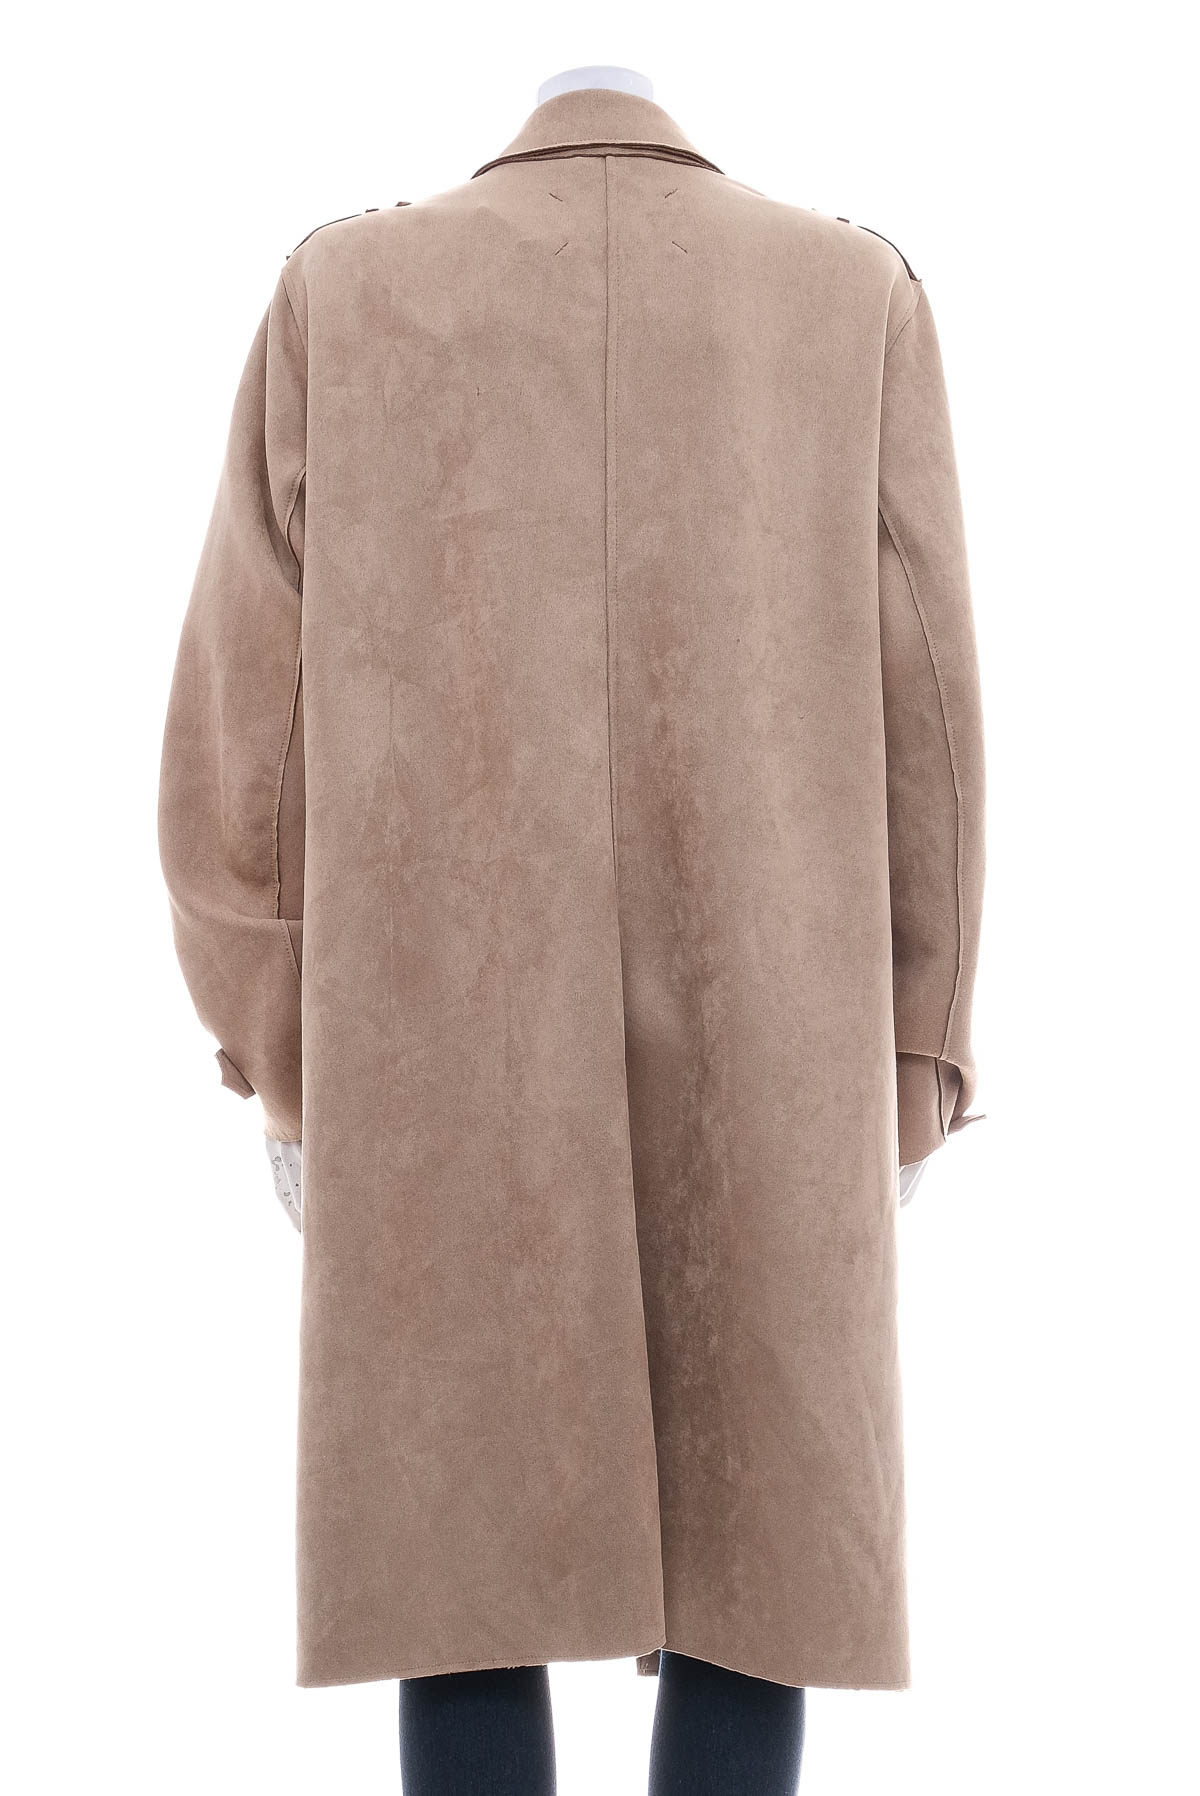 Women's coat - C&A - 1